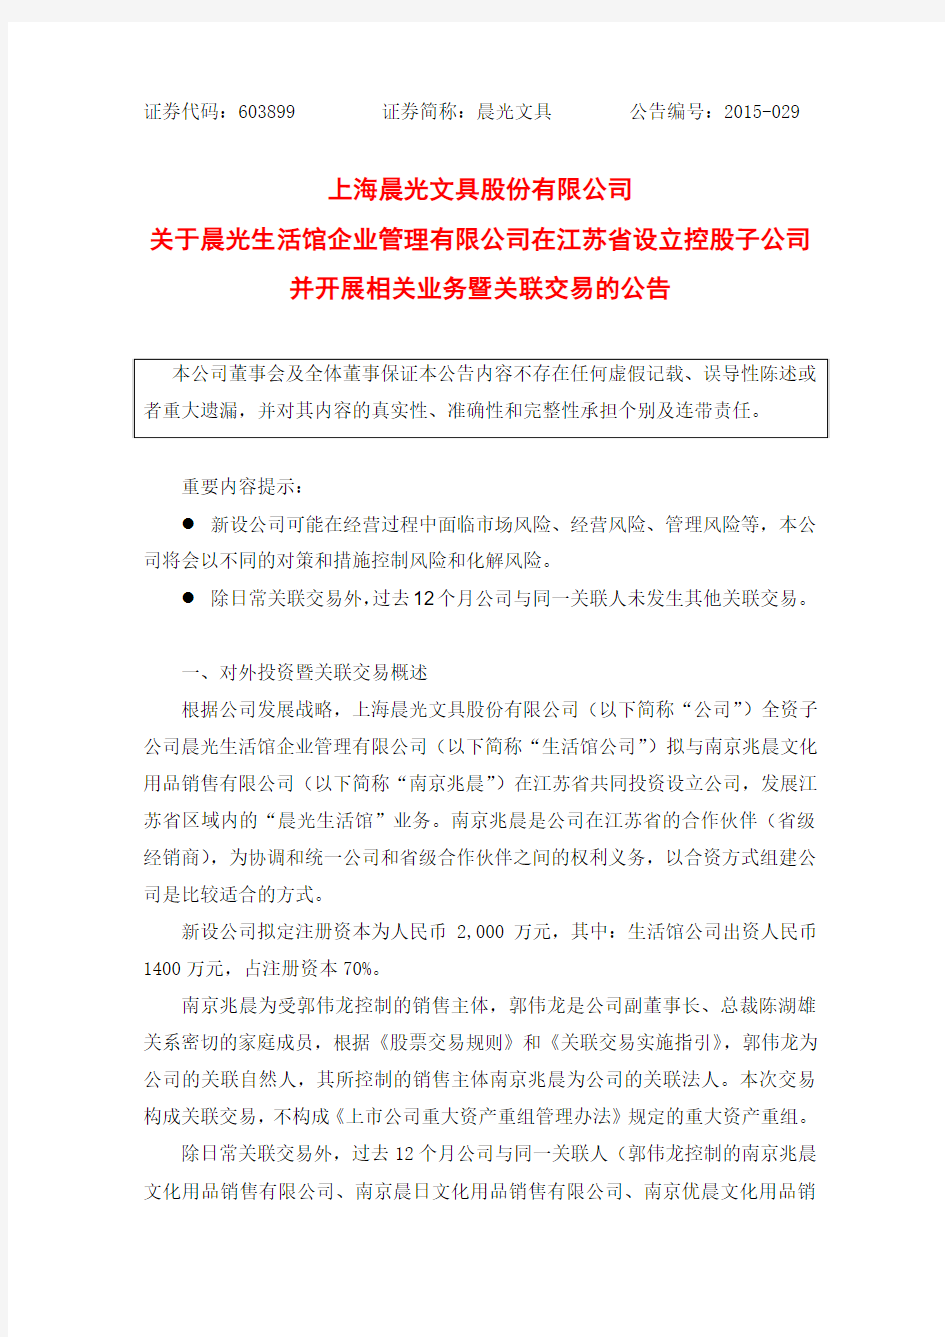 上海晨光文具股份有限公司 关于晨光生活馆企业管理有限 …